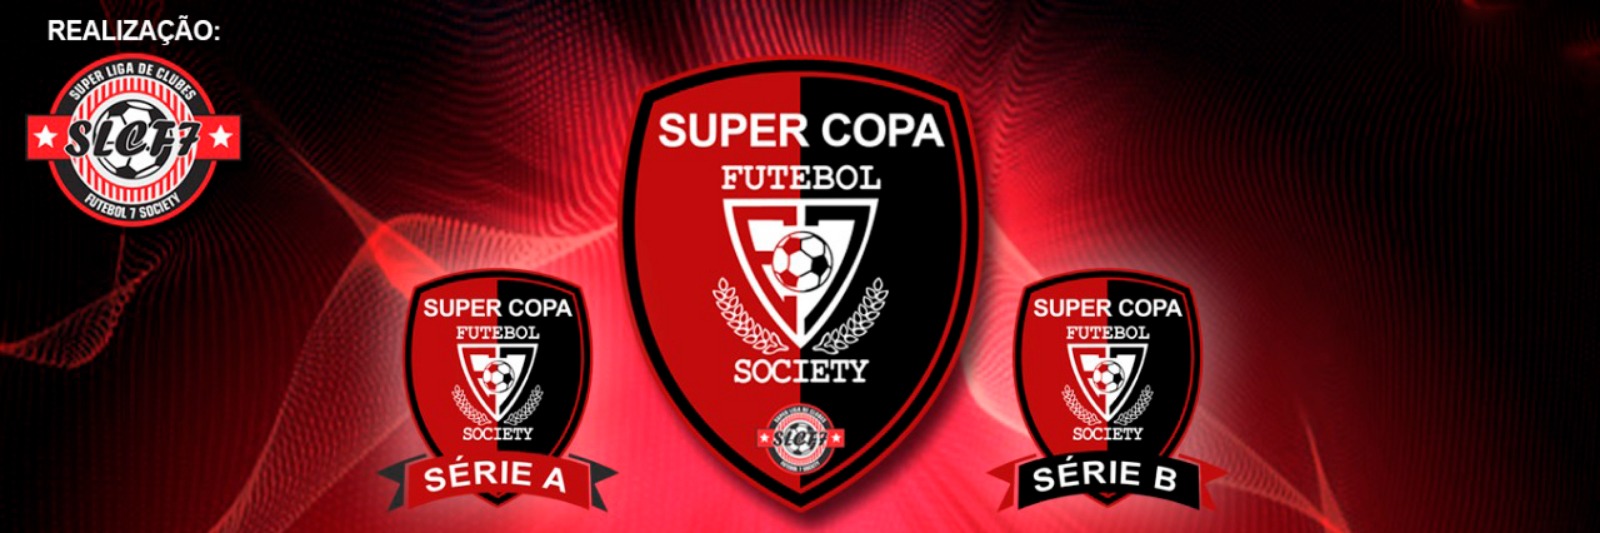 Super Copa Arena E7 2020